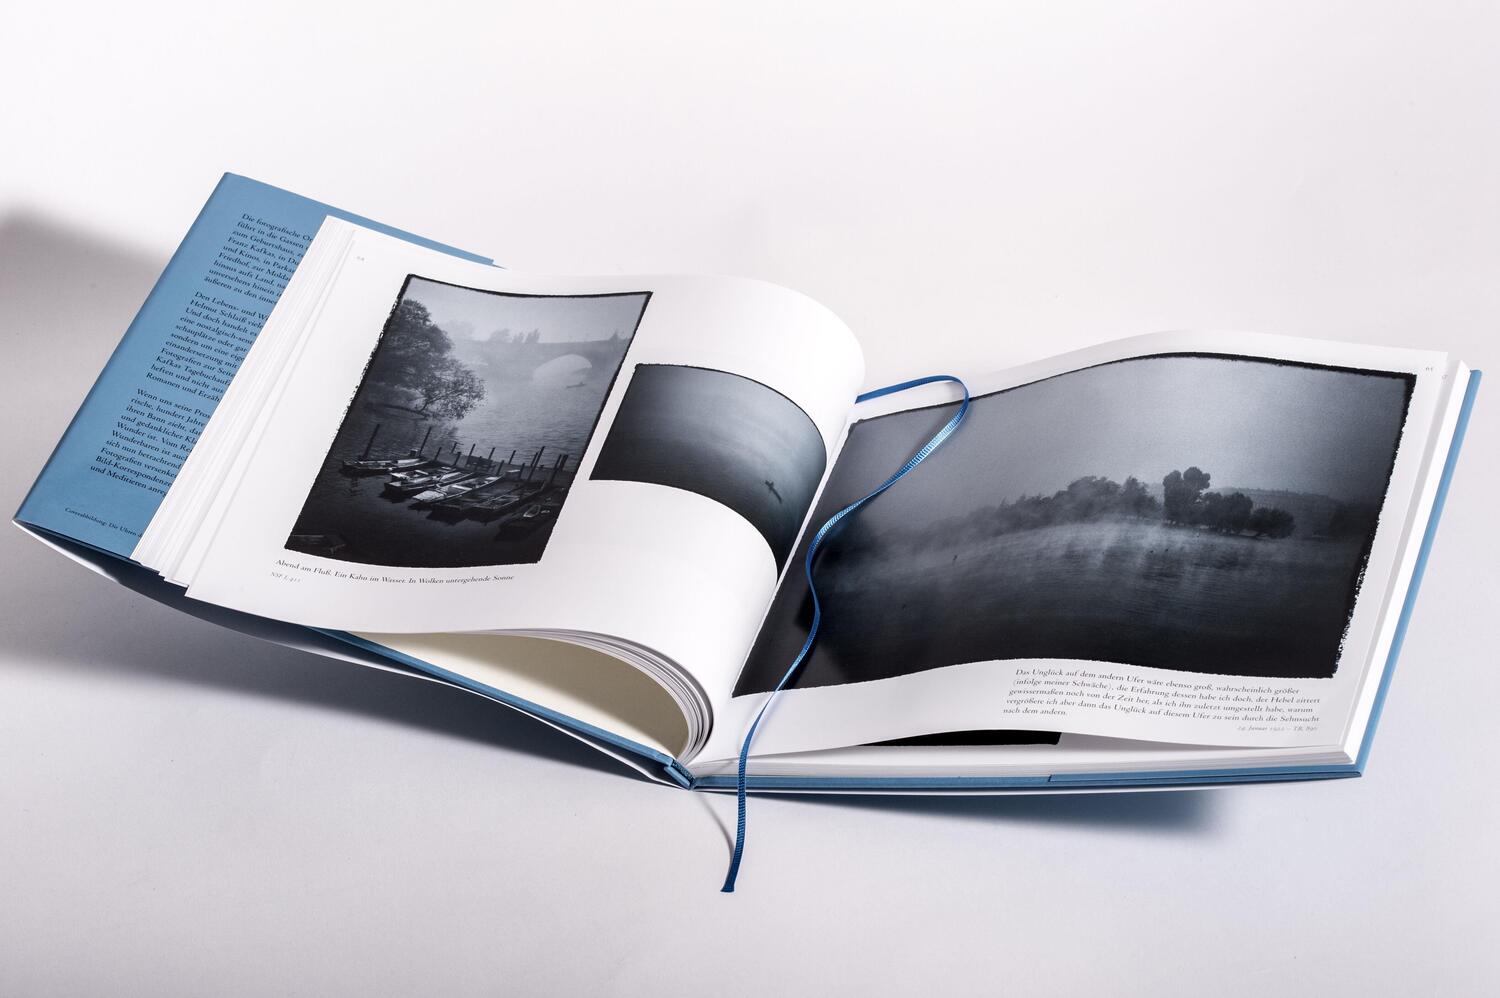 Bild: 9783717525486 | Kafkas Kosmos | Eine fotografische Spurensuche | Franz Kafka | Buch